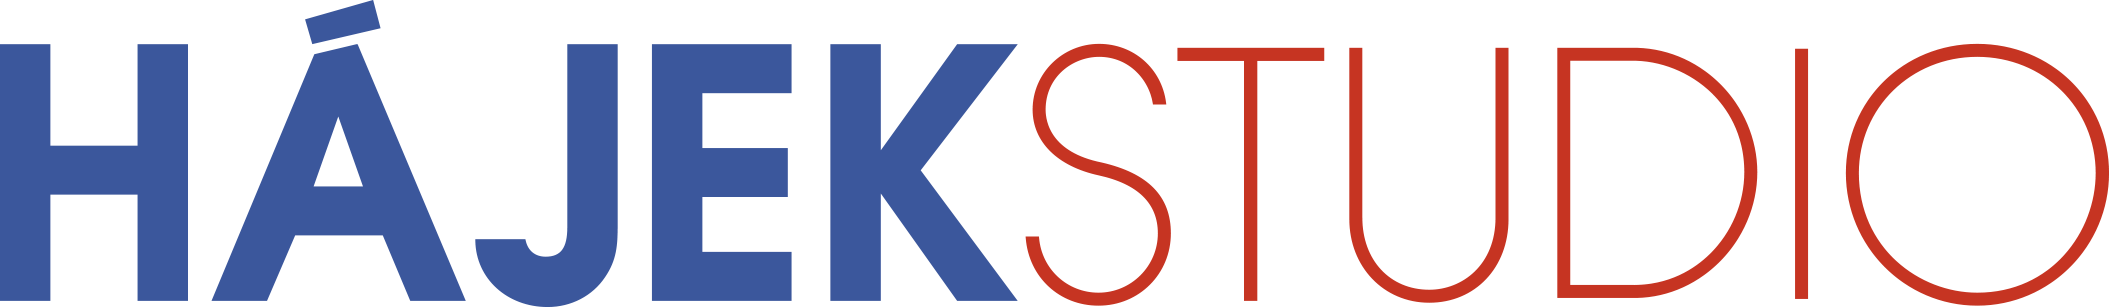 Logo Hájekstudio